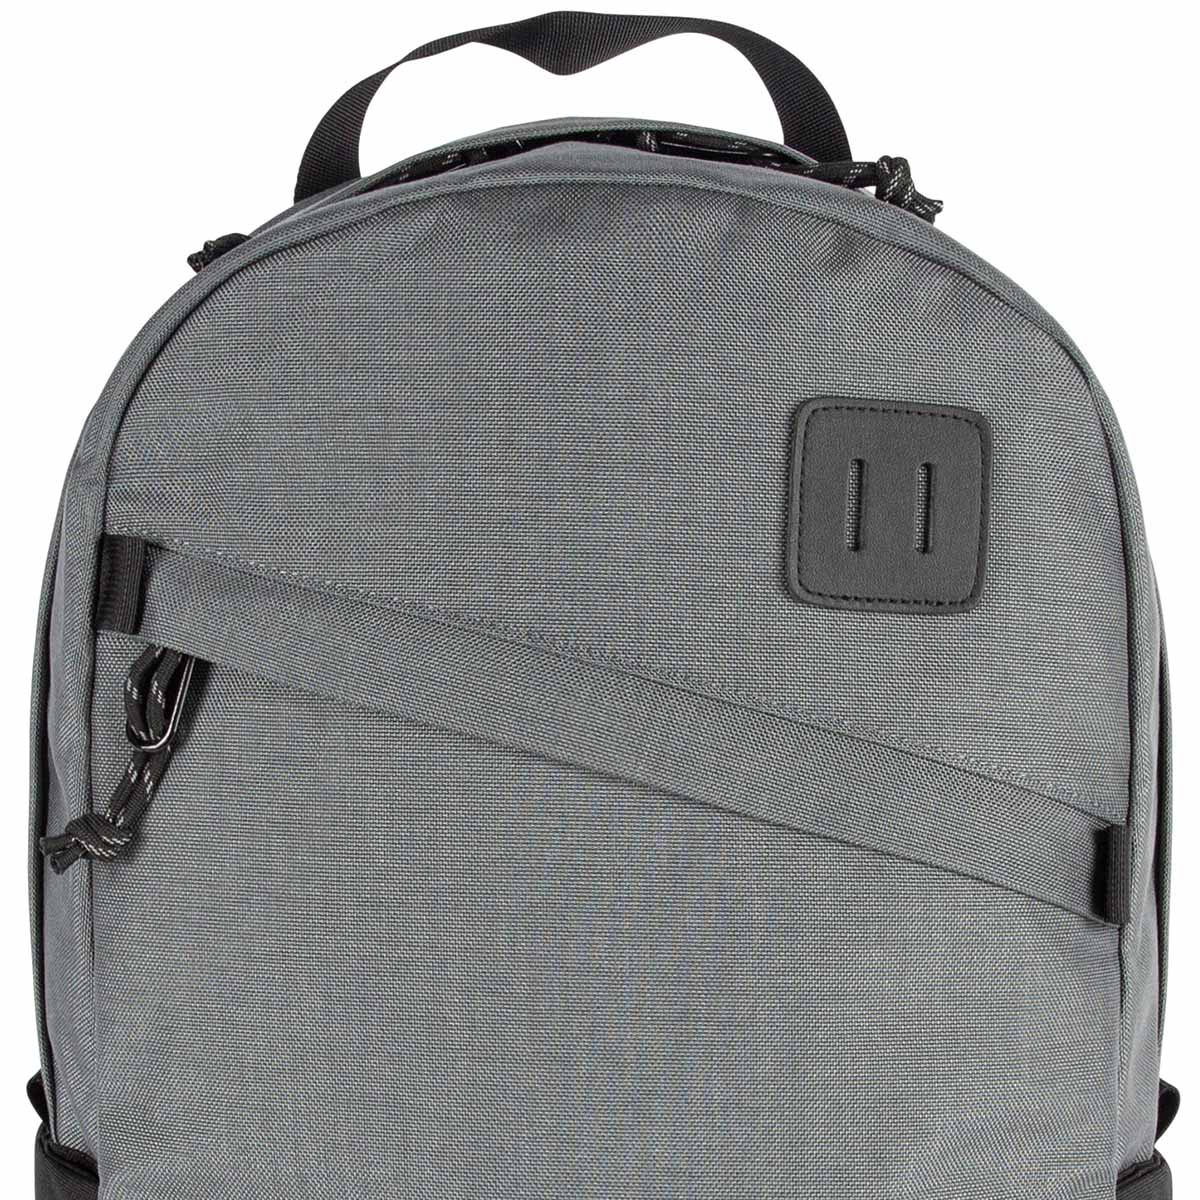 Topo Designs Daypack Classic Charcoal/Black, zeer sterke rugzak met klassieke uitstraling, uitermate geschikt voor dagelijks gebruik